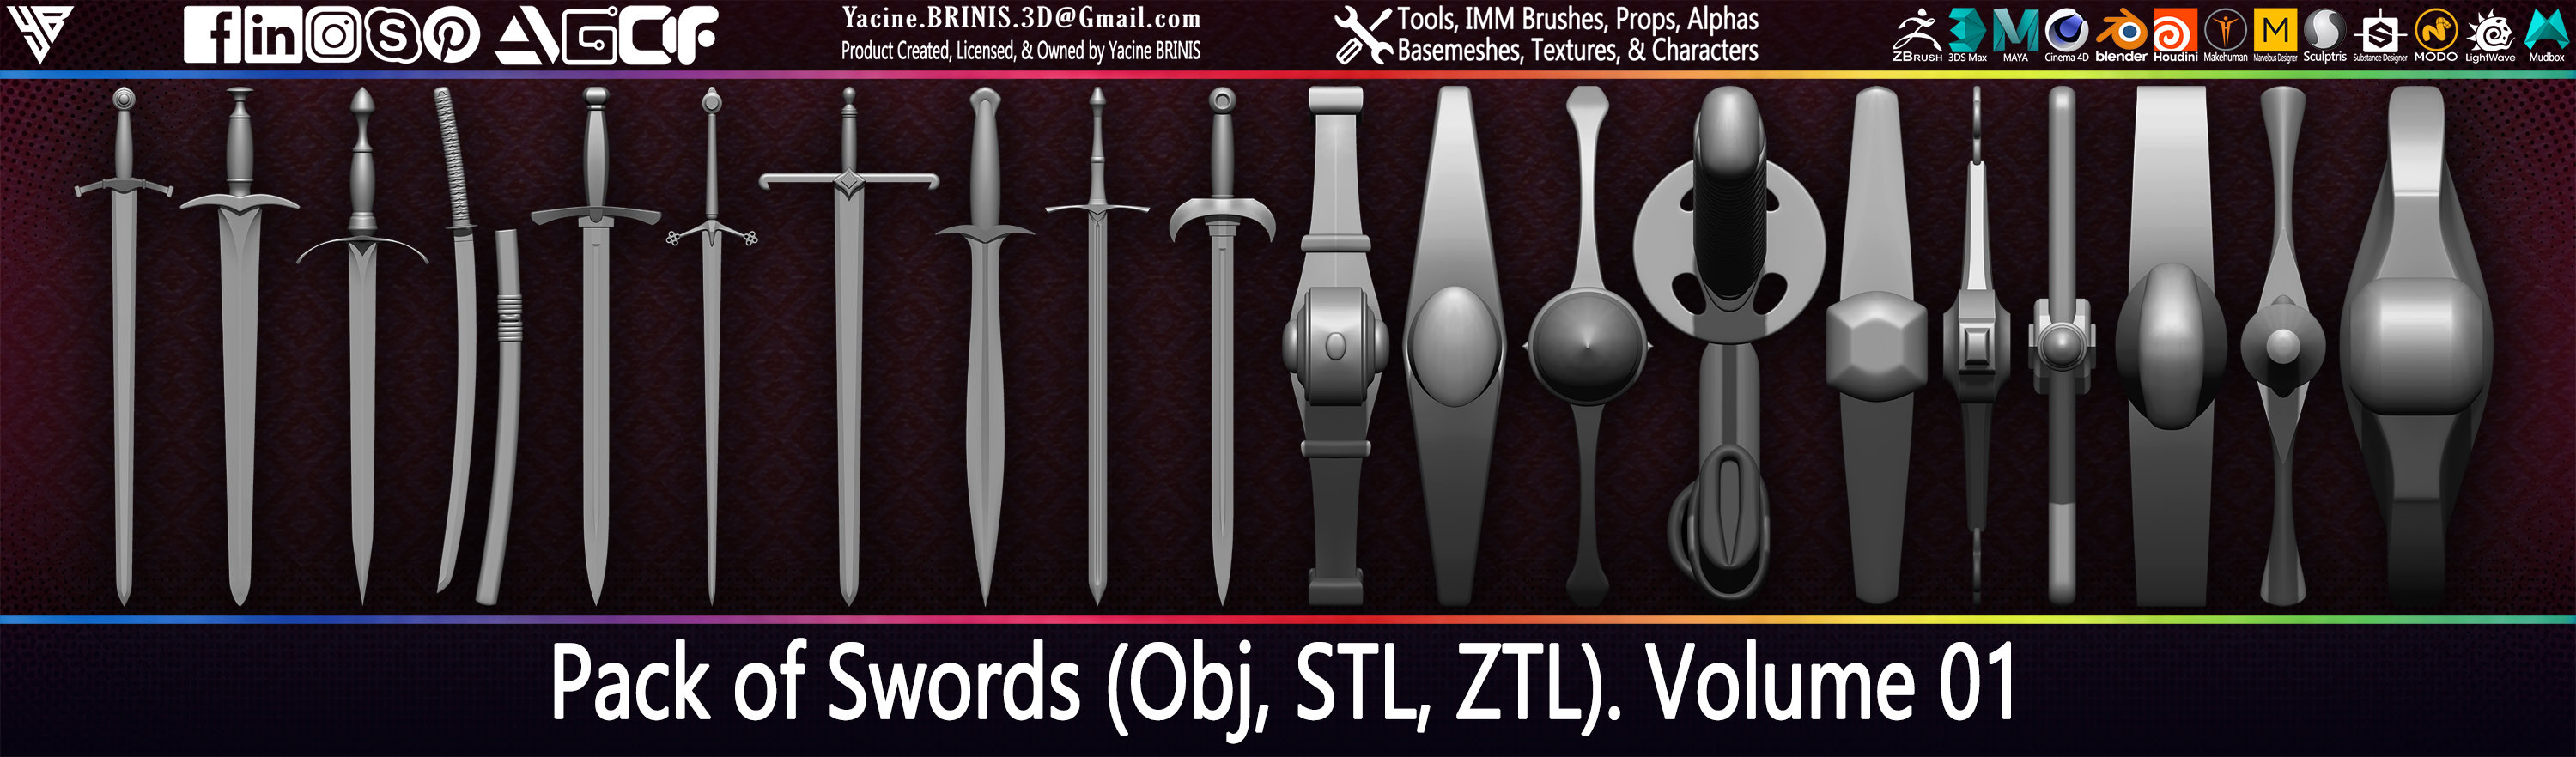 Swords Pack 01 By Yacine BRINIS (Obj, STL, ZTL) Set 005